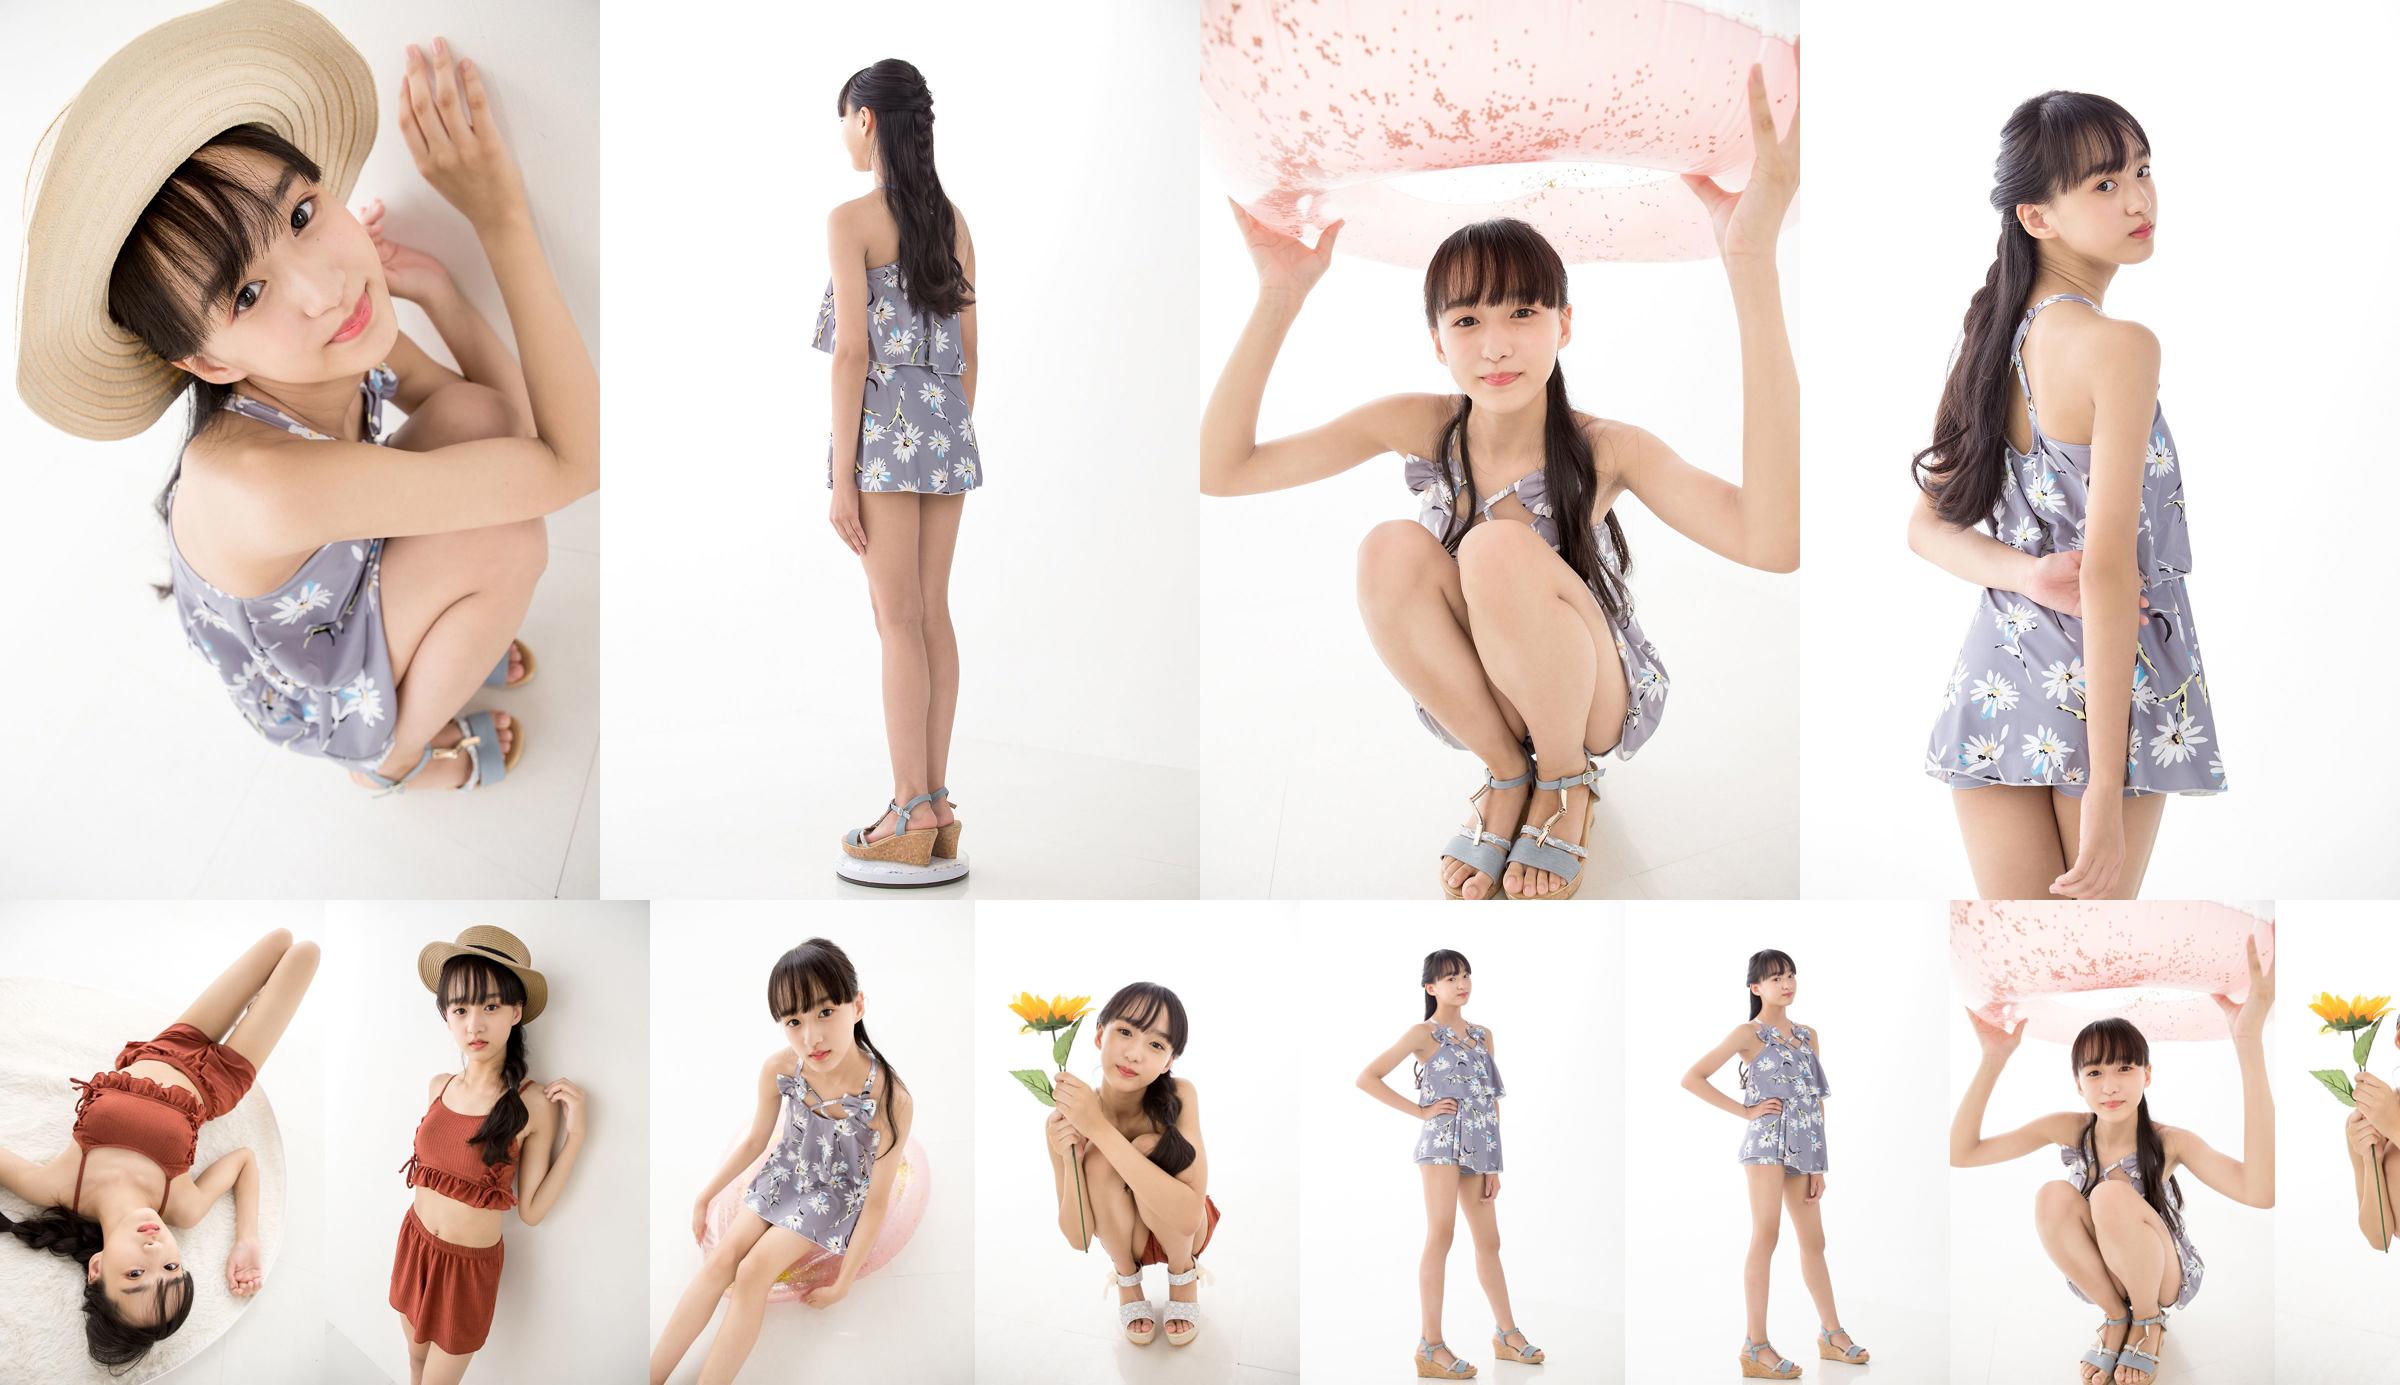 [Minisuka.tv] Yuna Sakiyama 咲山ゆな - Fresh-idol Gallery 05 No.720cb4 หน้า 1